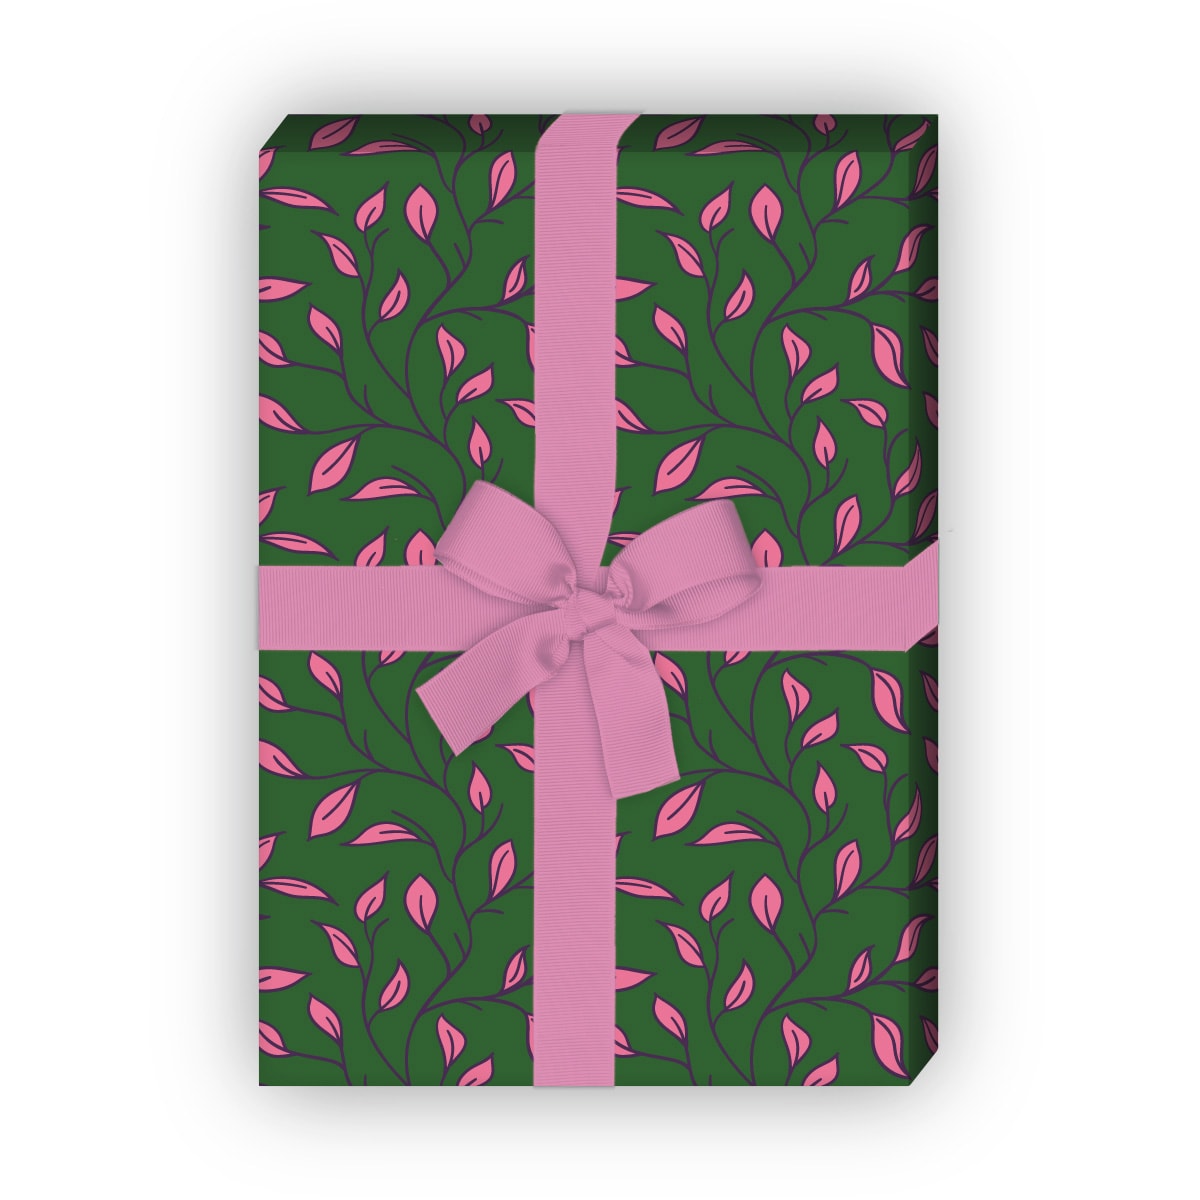 Kartenkaufrausch: Edles florales Geschenkpapier mit aus unserer Natur Papeterie in grün